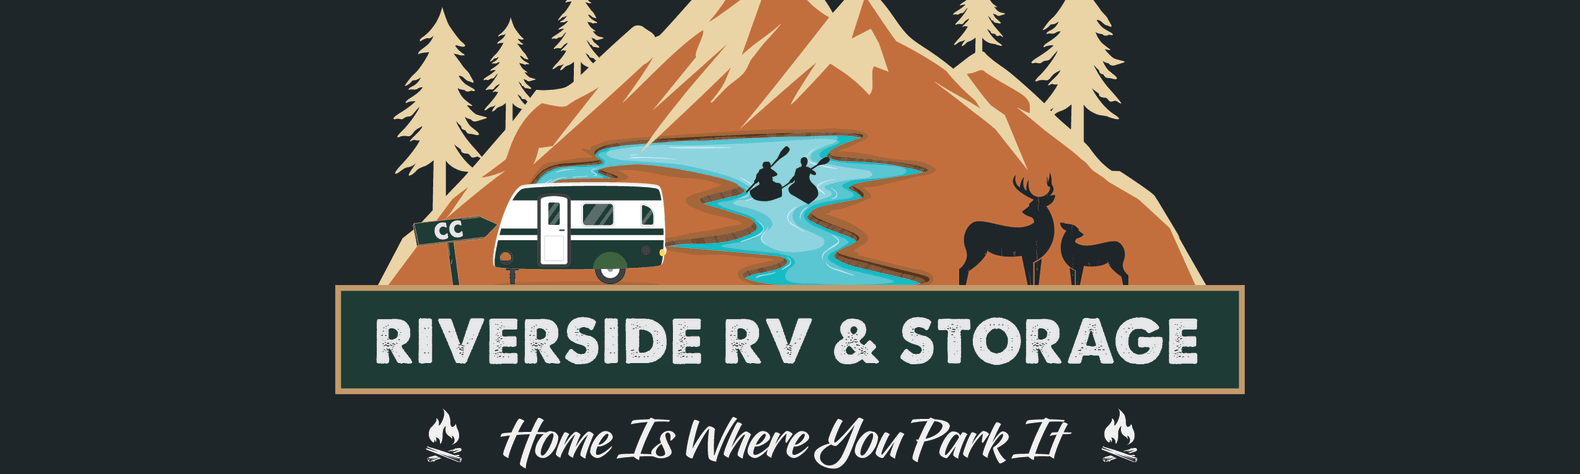 Riverside RV & Storage